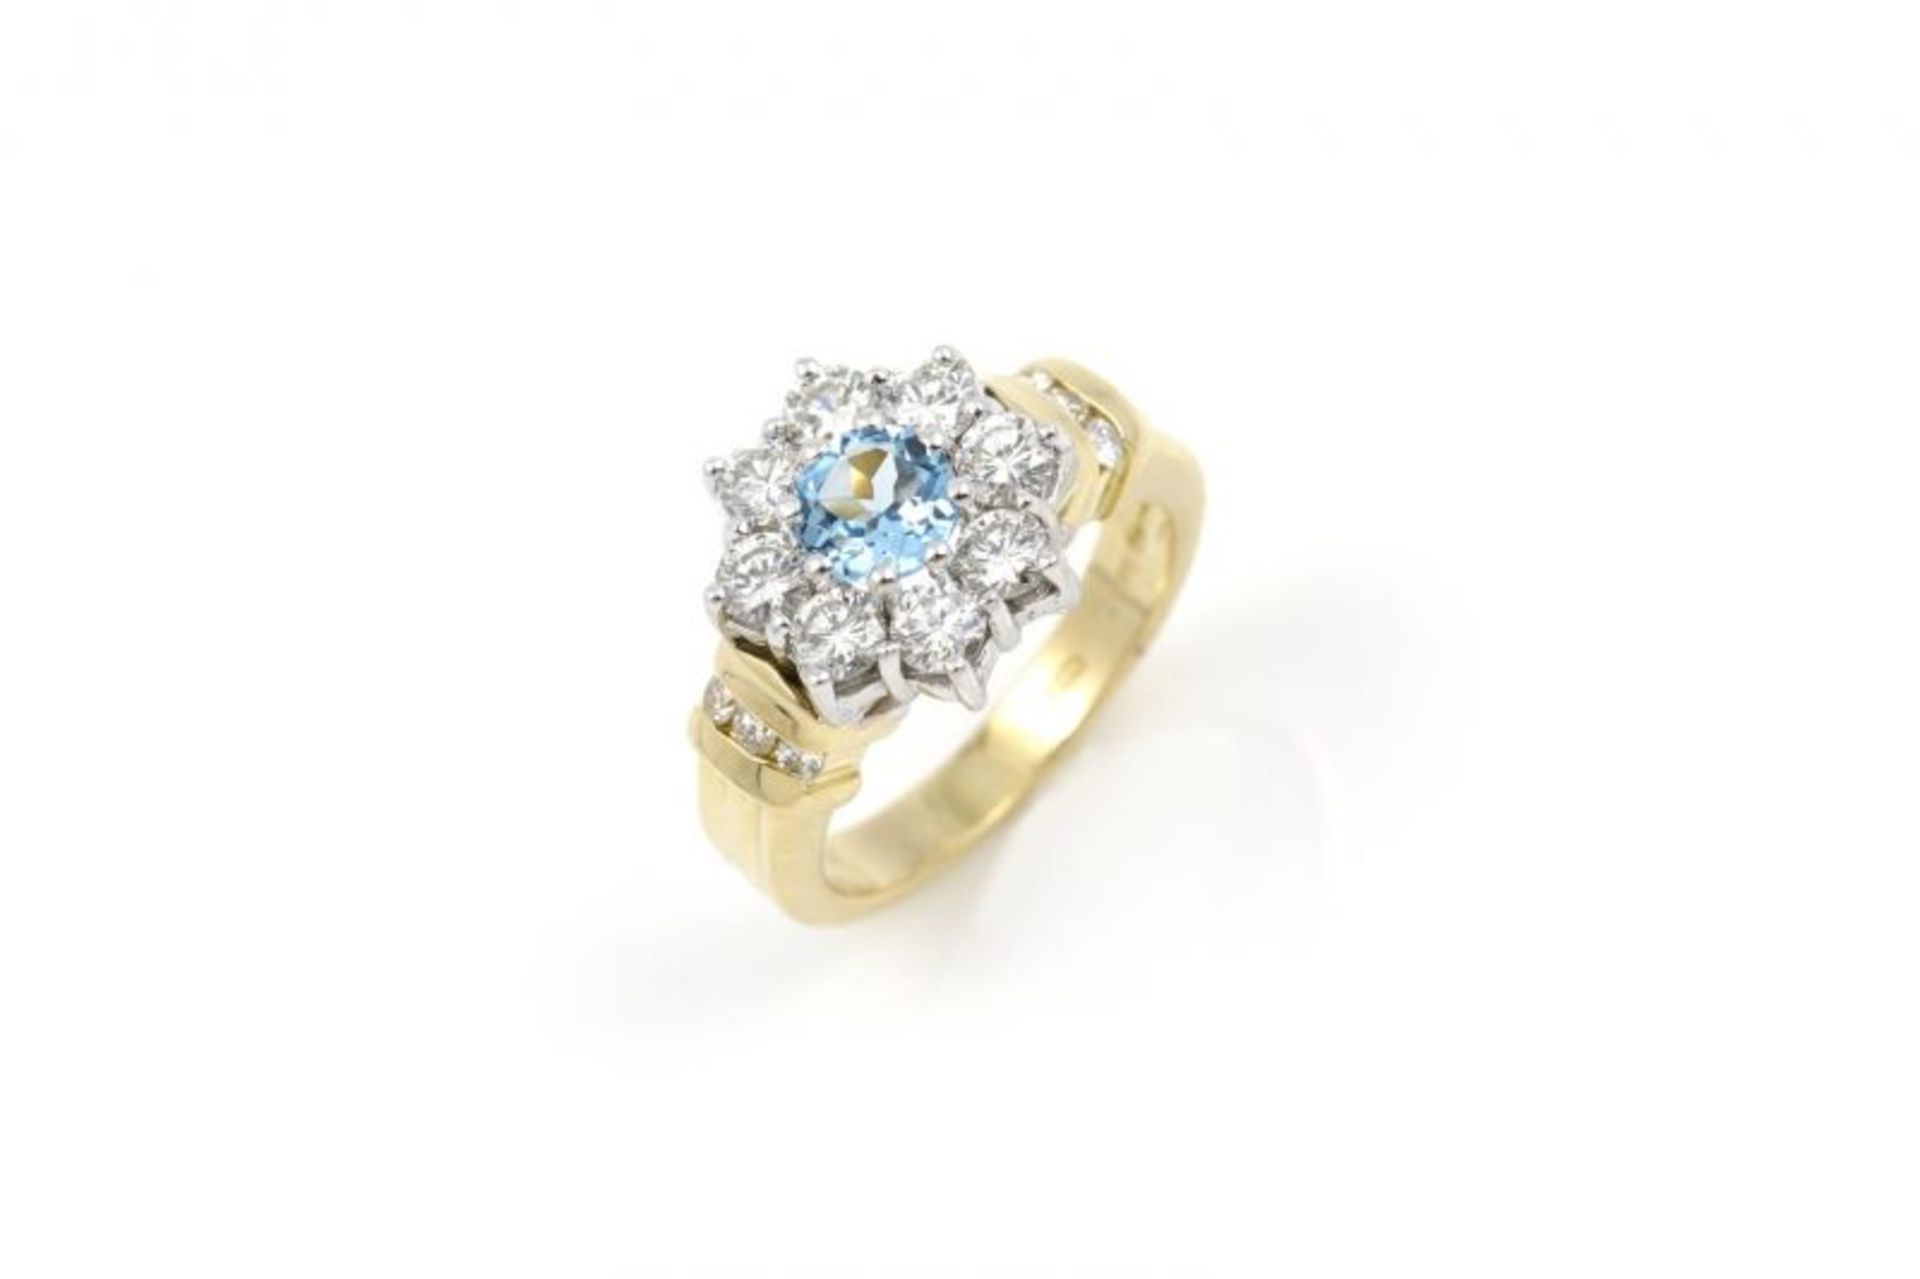 18 krt. gouden ring bezet met blauwe topaas en diamanten, totaal circa 1.40 karaat